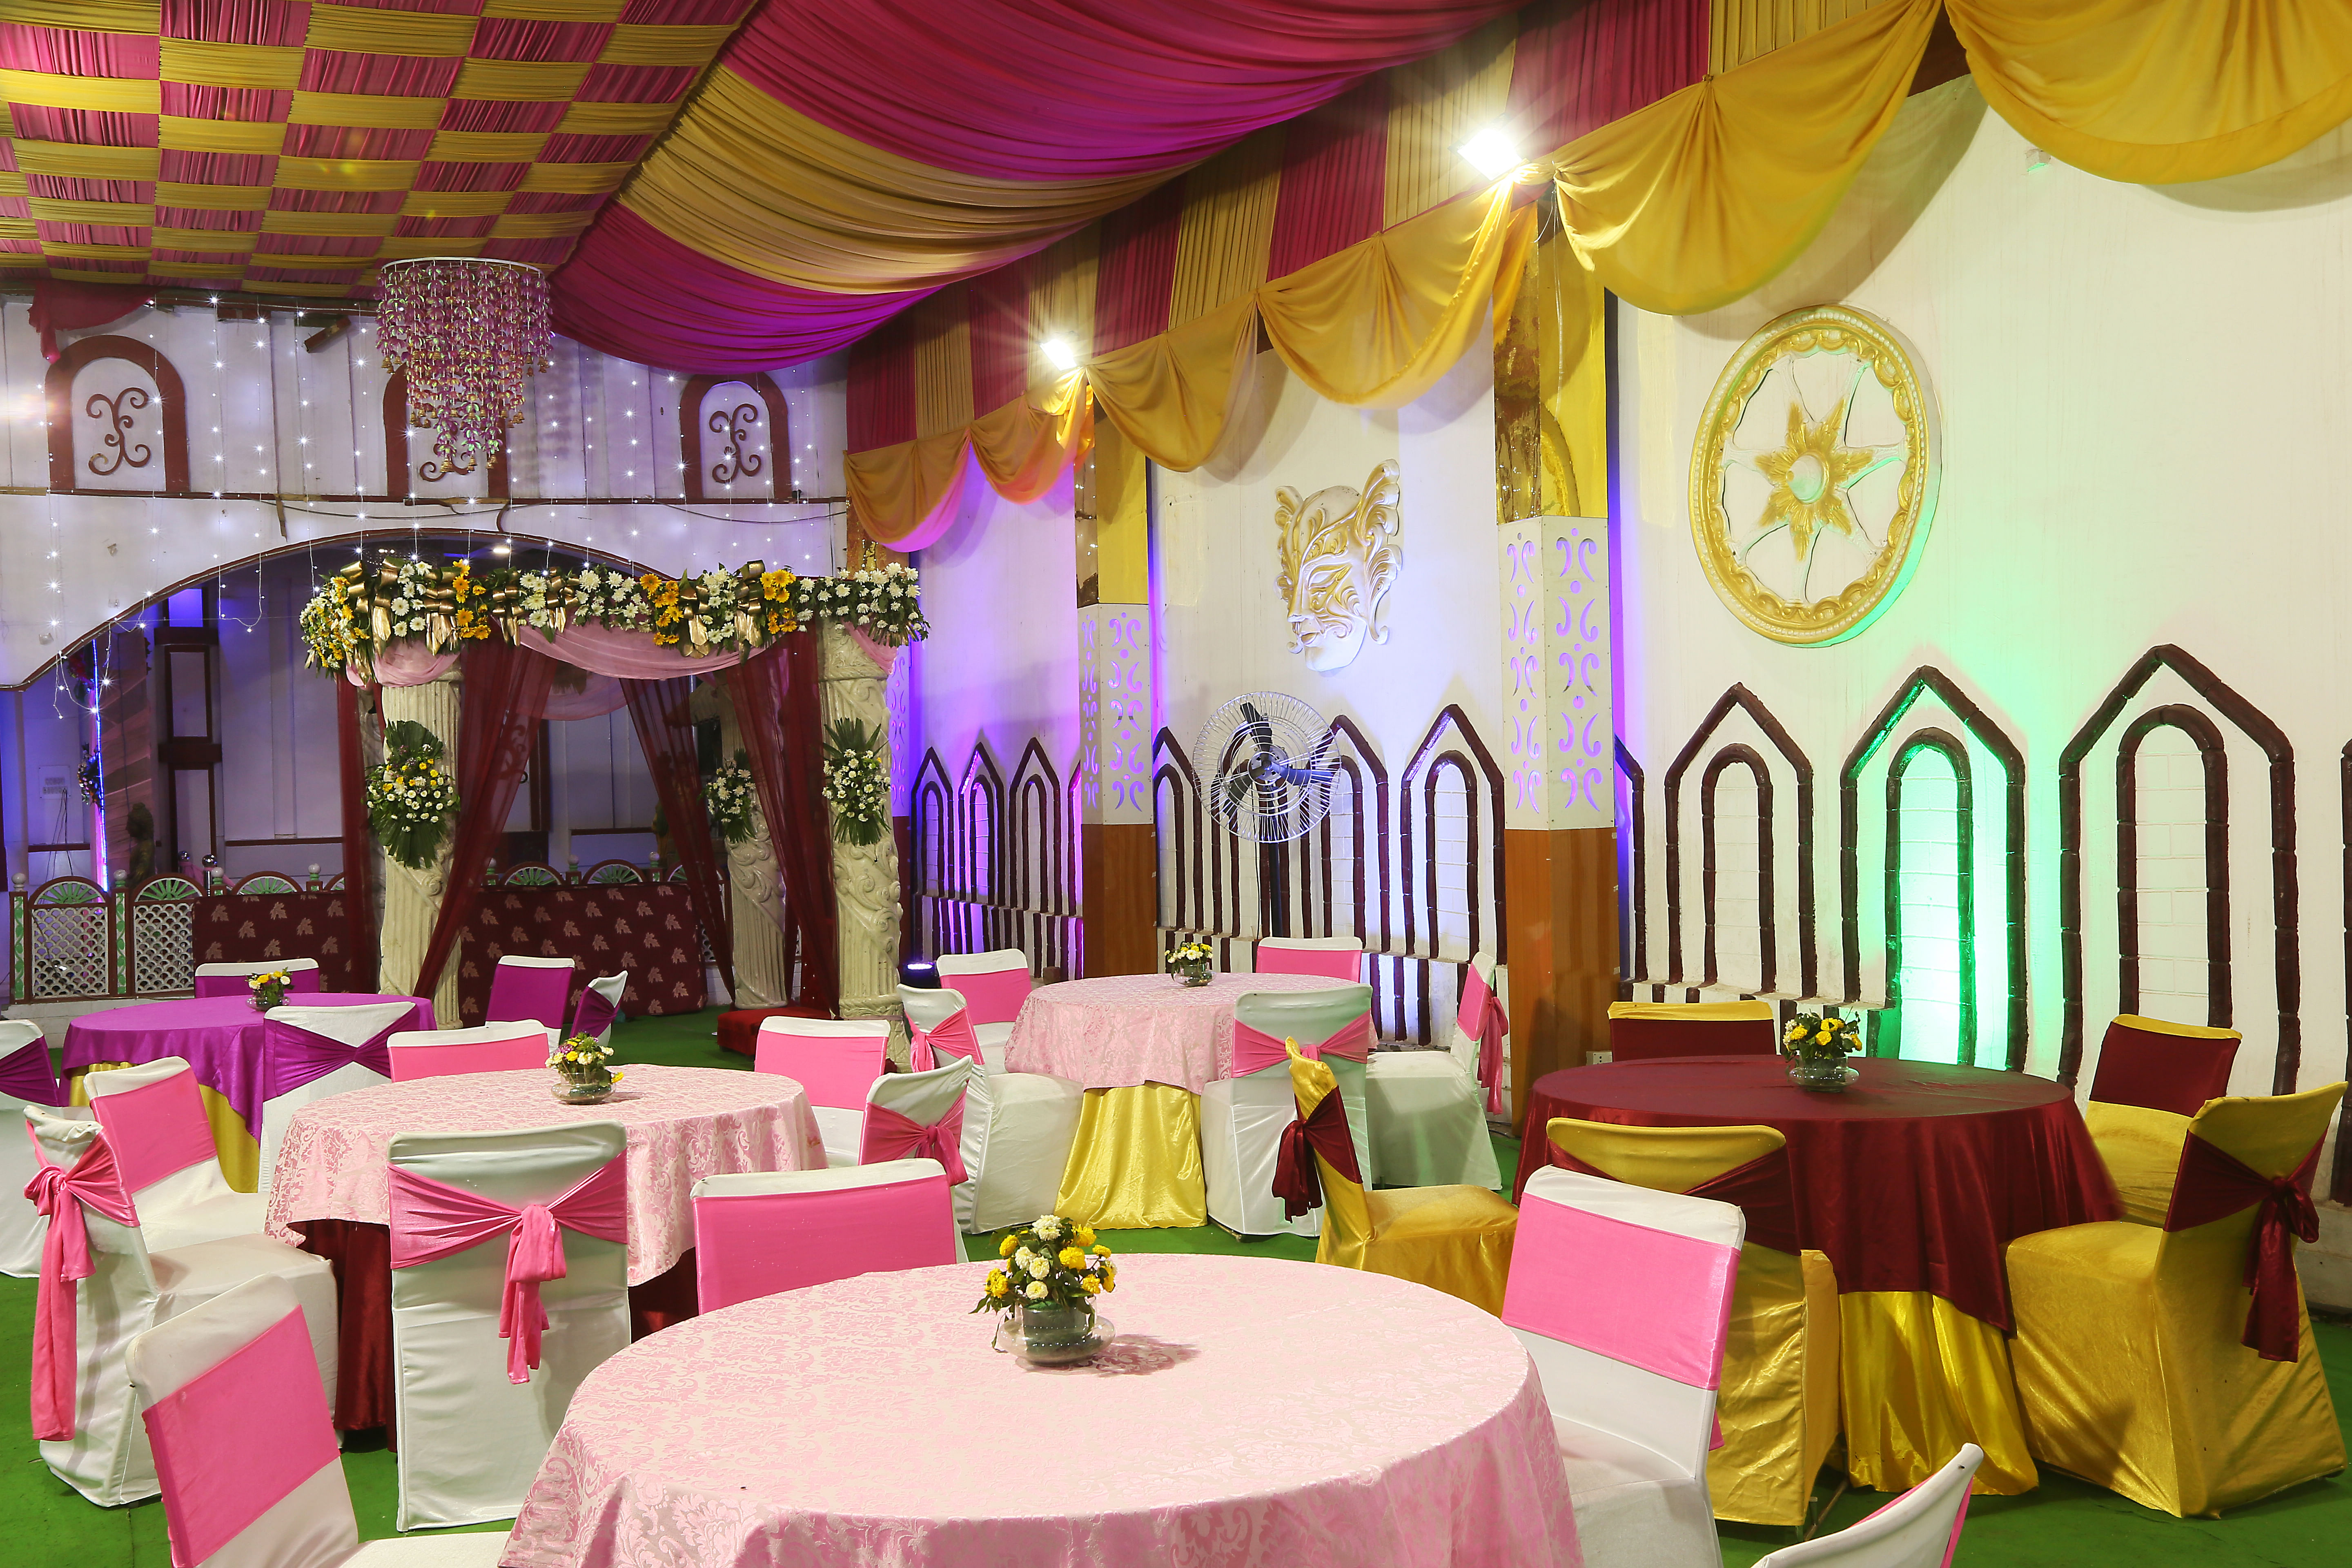 Anand Mangal Banquet in Dwarka, Delhi